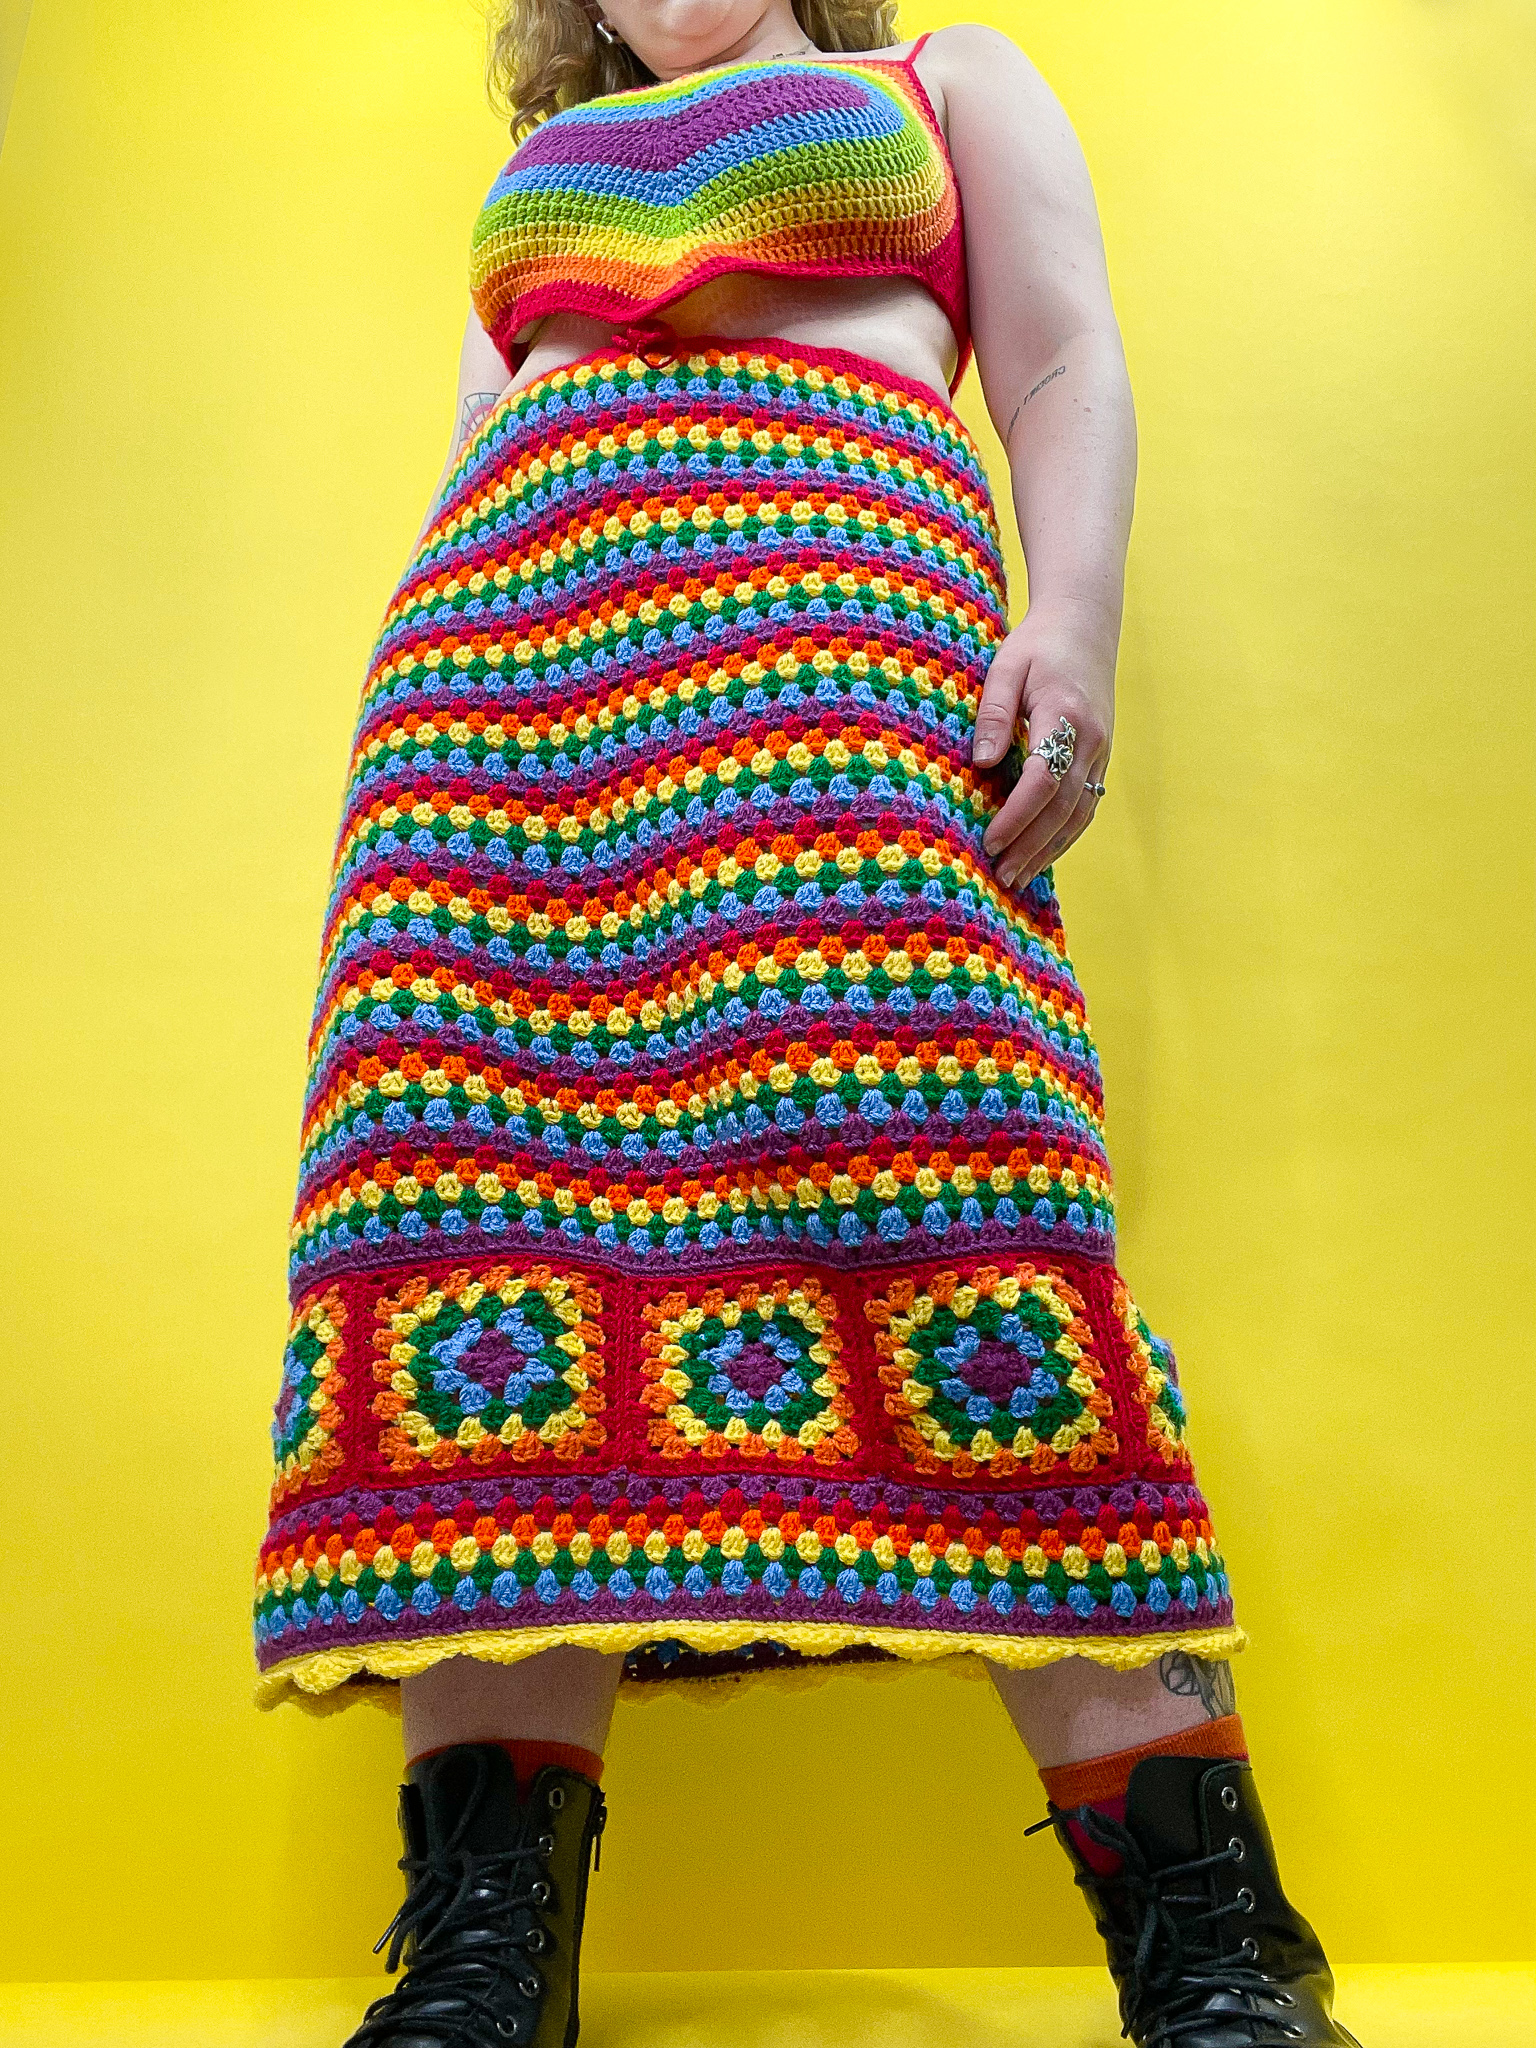 a woman wearing a rainbow crochet skirt